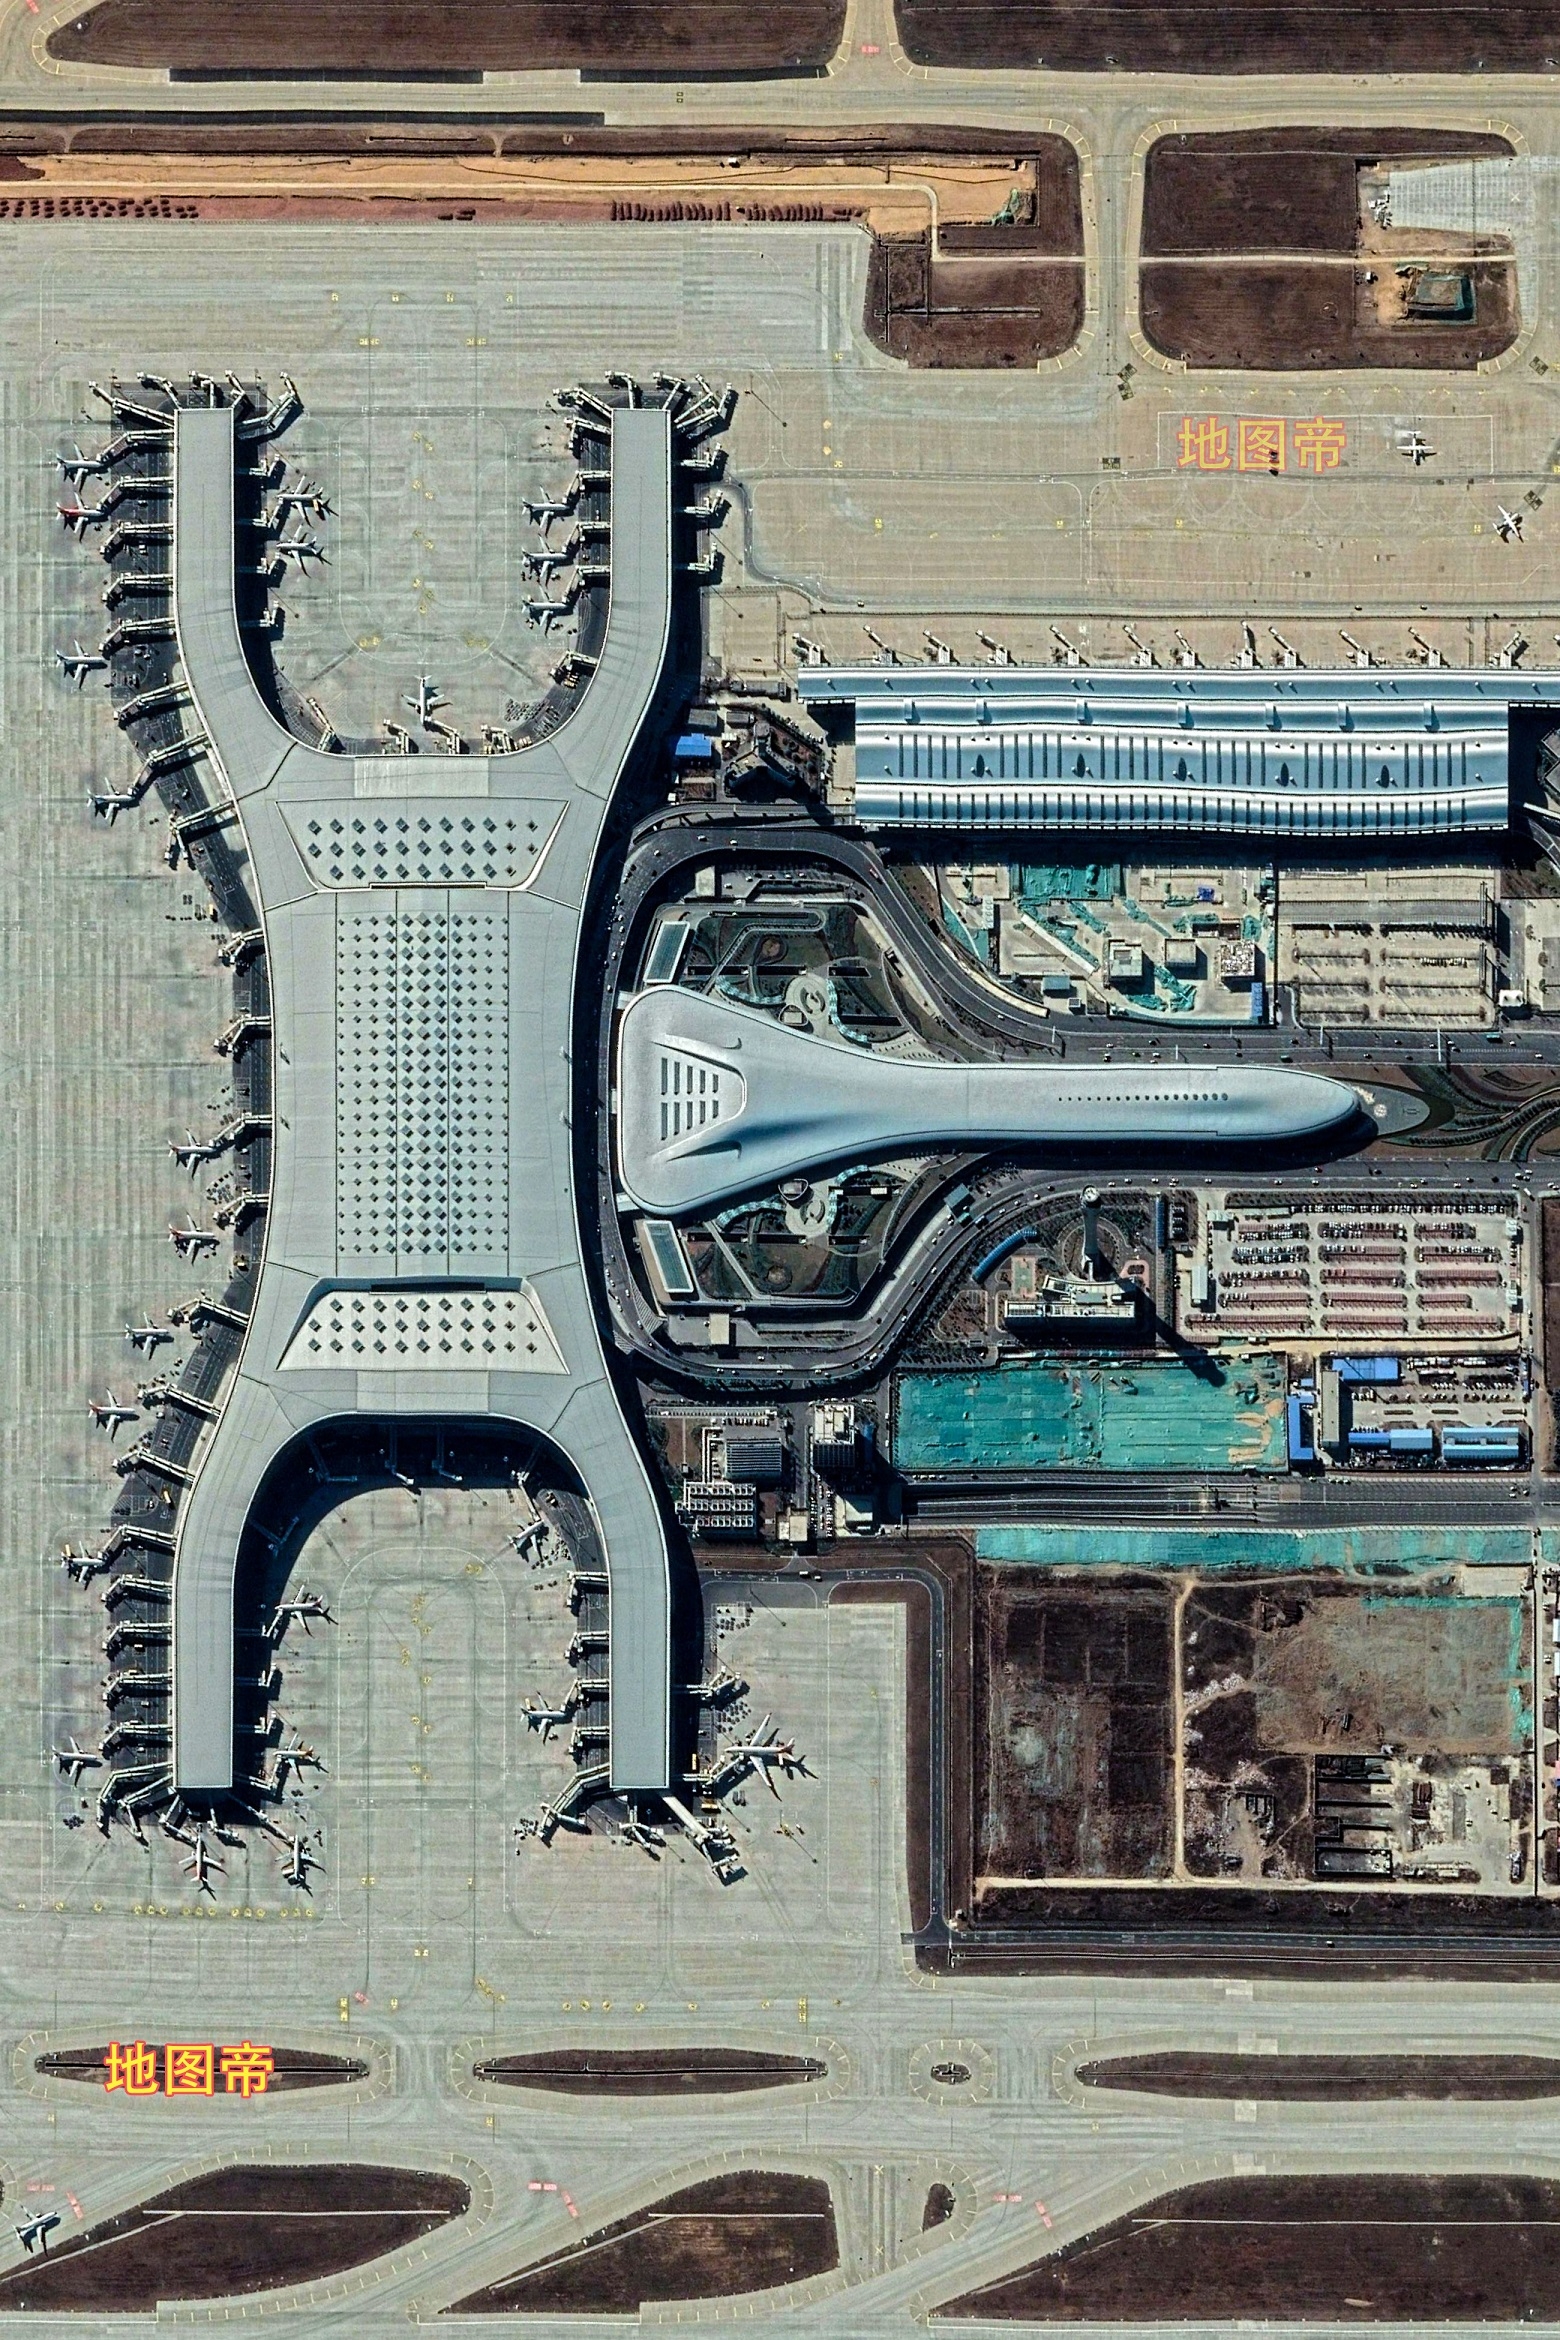 郑州新郑国际机场目前有t1,t2两座航站楼,总面积62万平方米,t1航站楼